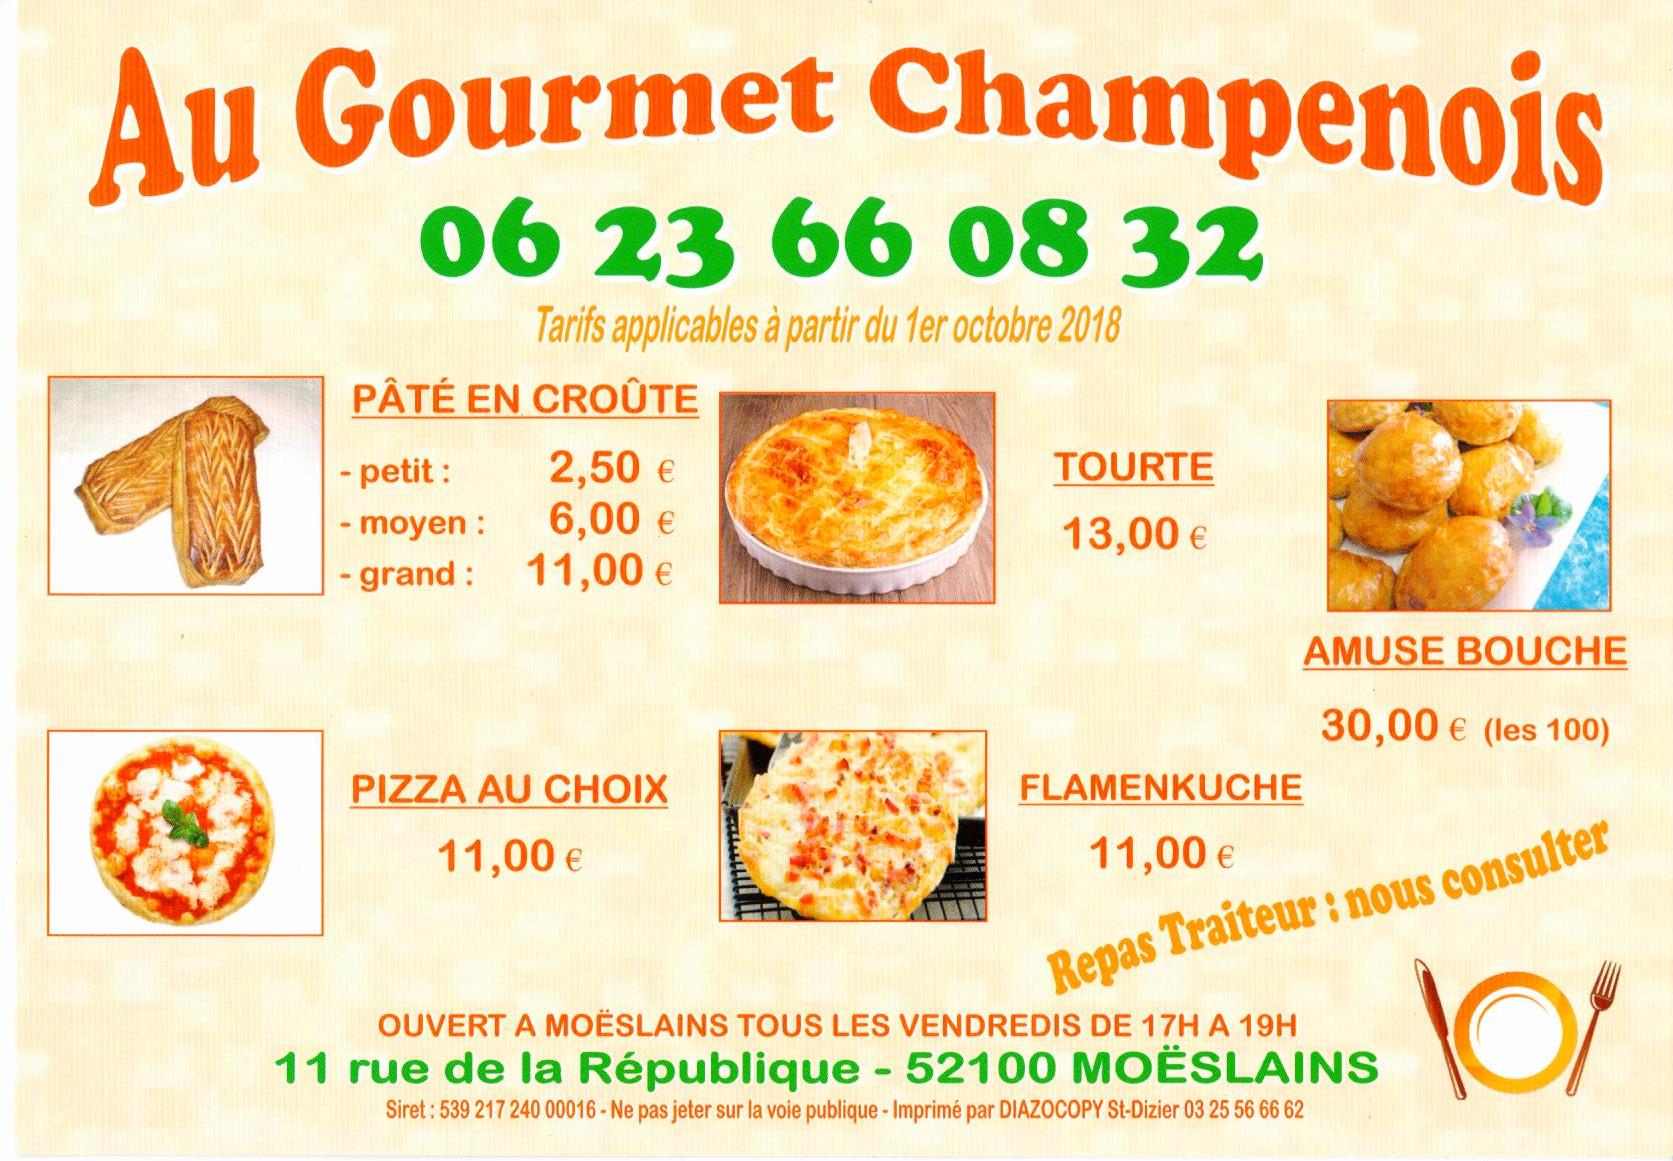 Gourmet Champenois.jpg